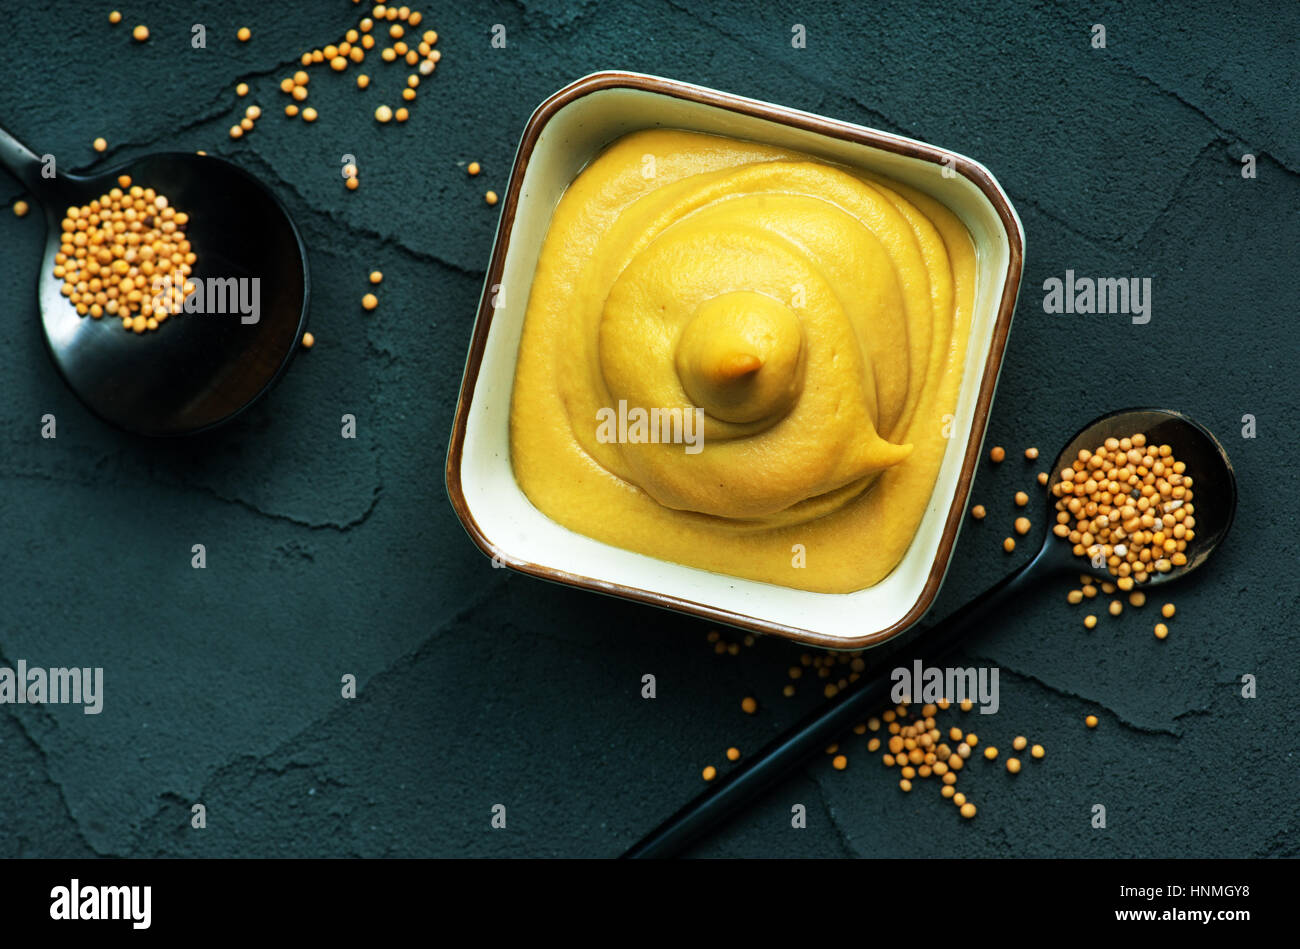 La moutarde dans un bol et sur une table Banque D'Images